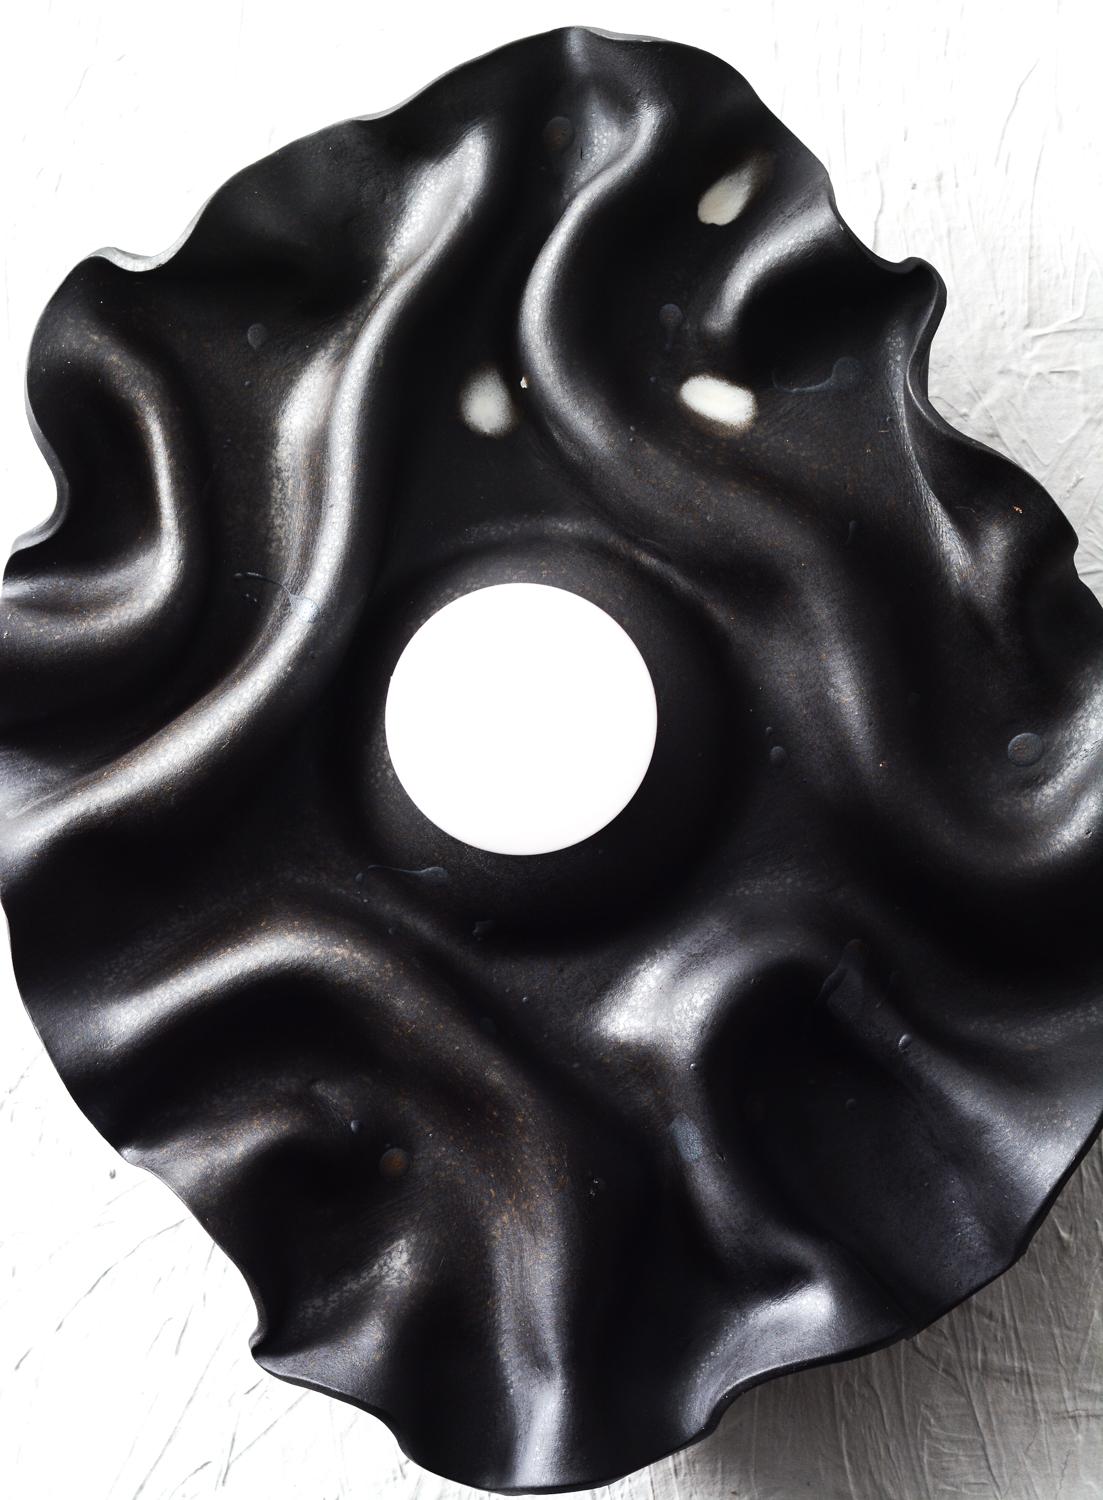 Handgefertigter Wandleuchter aus Keramik mit drapiertem/gefaltetem schwarzem Steinzeugton, der an die natürliche Welt und das Universum erinnert.
Die Natur der Technik, mit der der Ton geformt wird, verleiht jedem Stück einen Hauch von